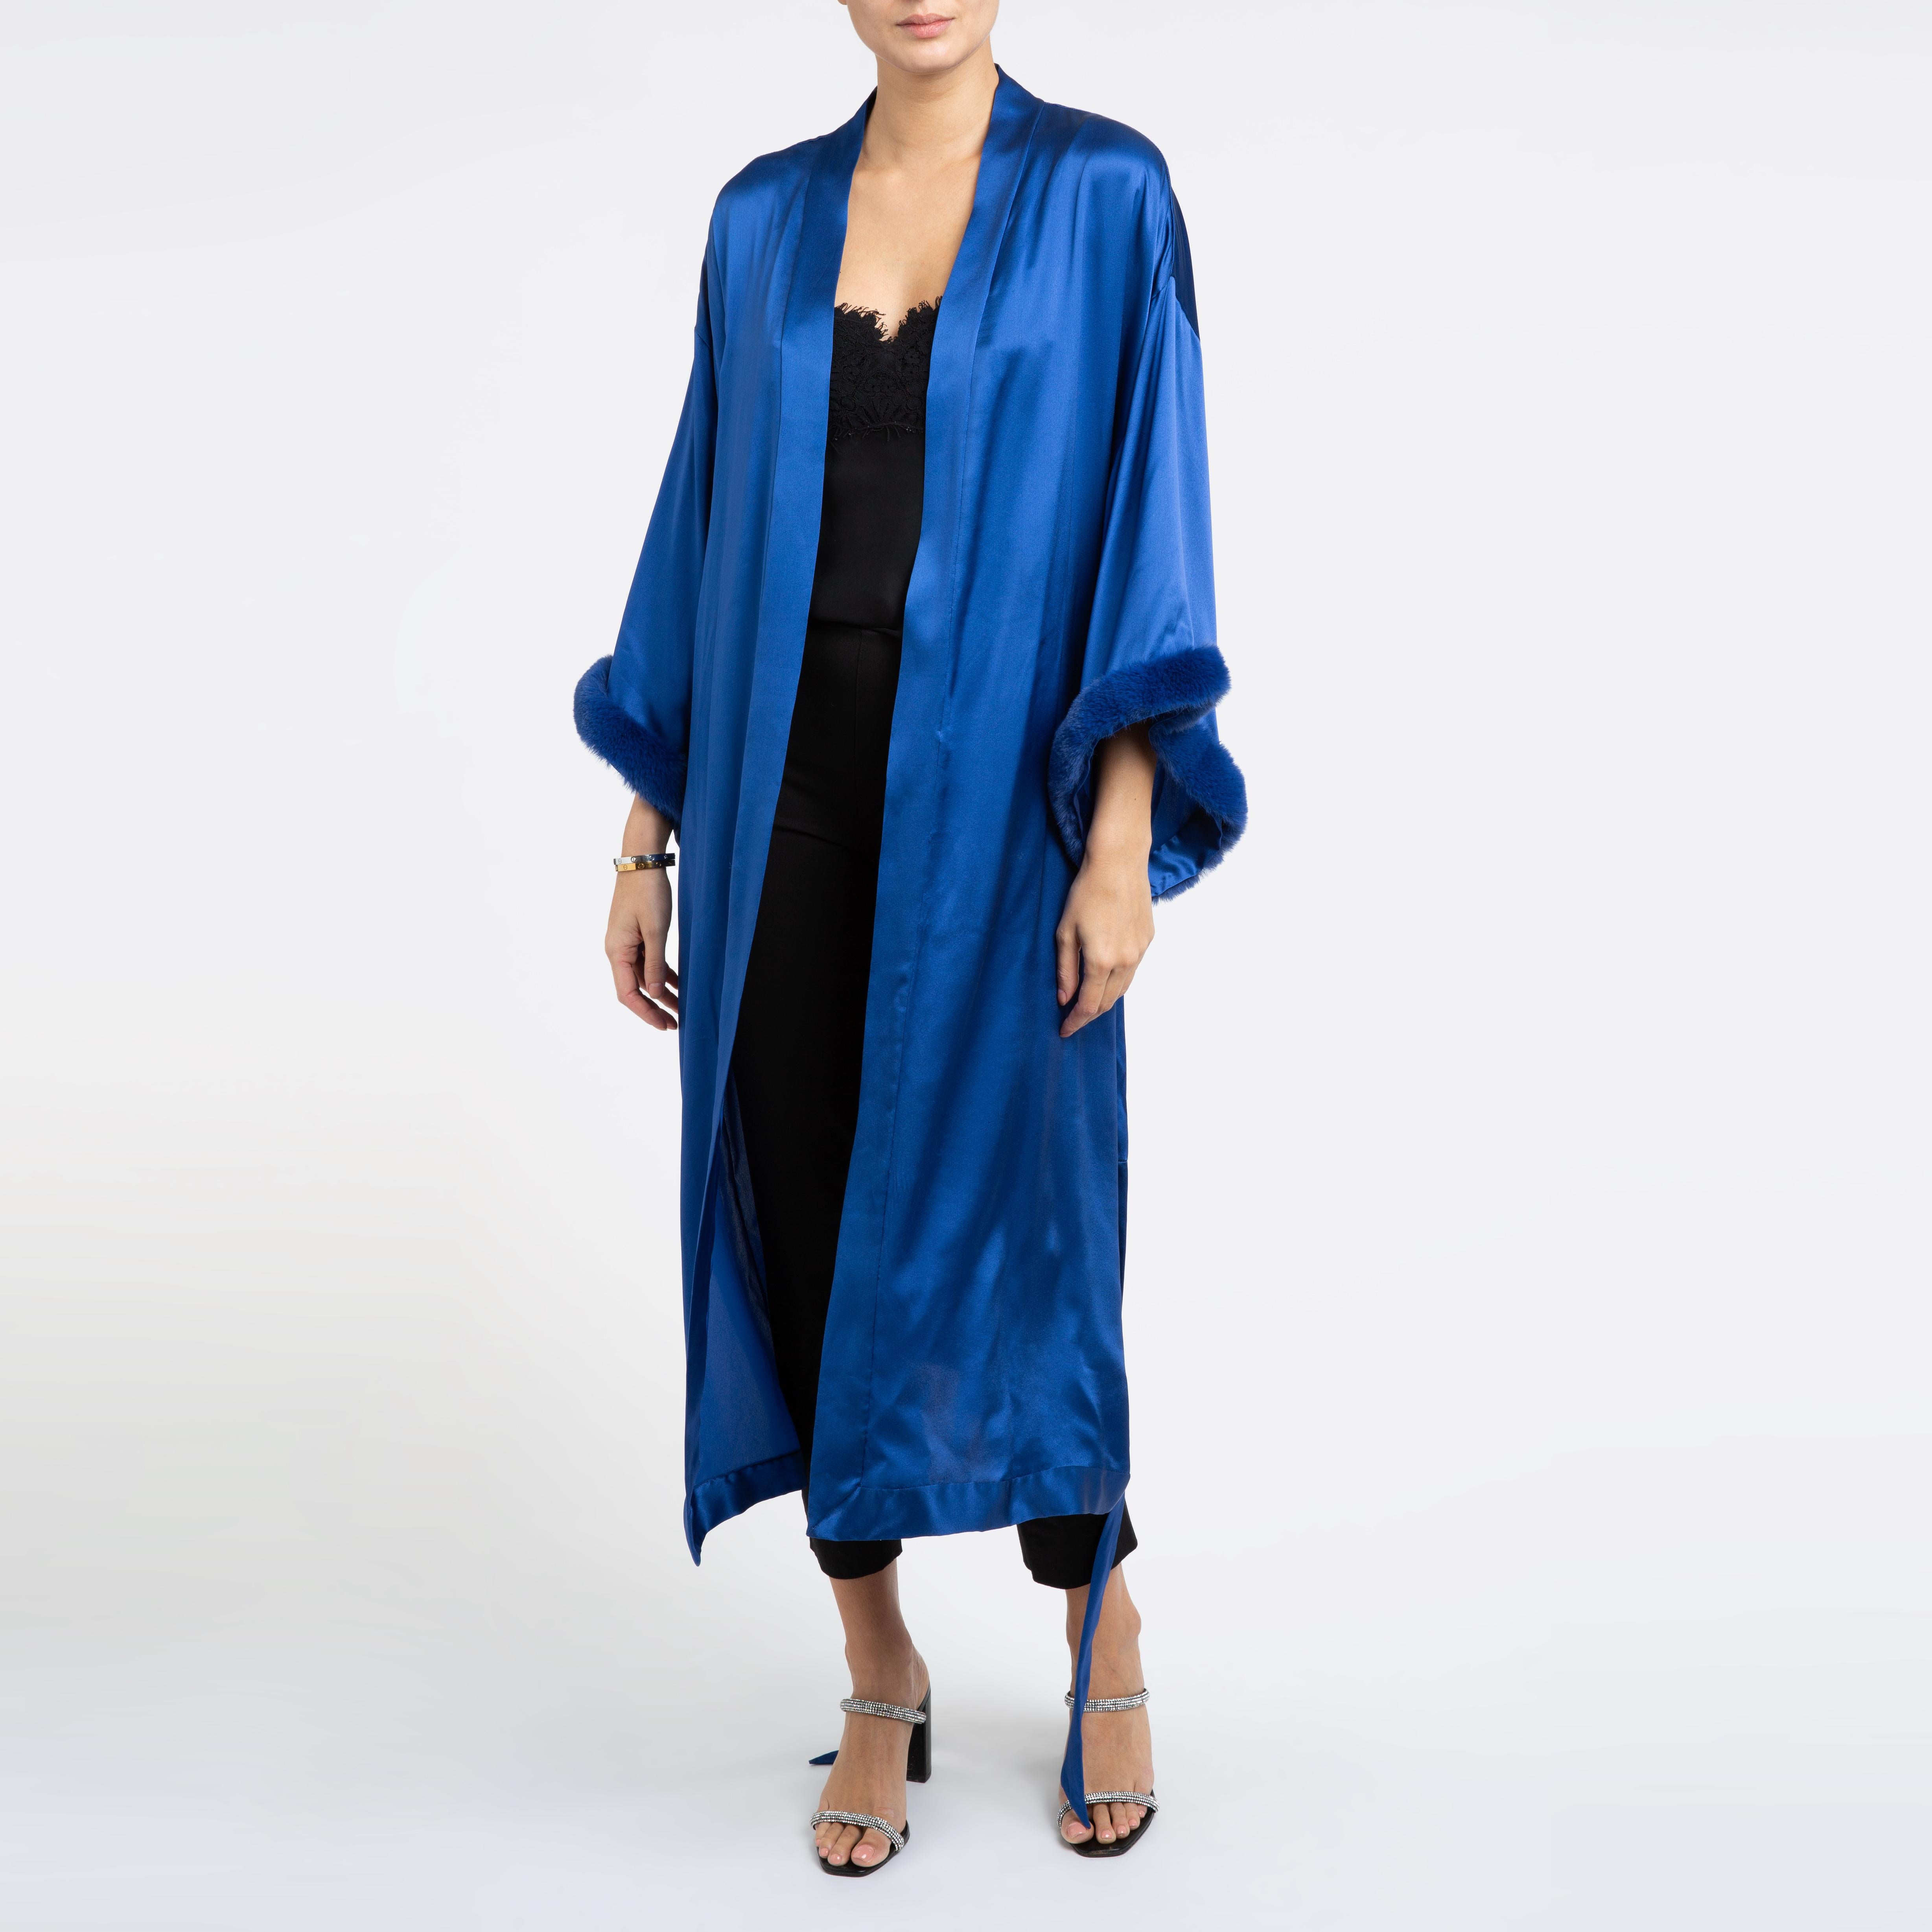 Blauer Kimono aus italienischem Seiden-Satin mit Kunstpelz von Verheyen in Londoner Größe 

Der Kimono von Verheyen London ist das perfekte Kleid für die Abendgarderobe oder ein Mantelkleid, das man abends mit Jeans und Absätzen tragen kann. 